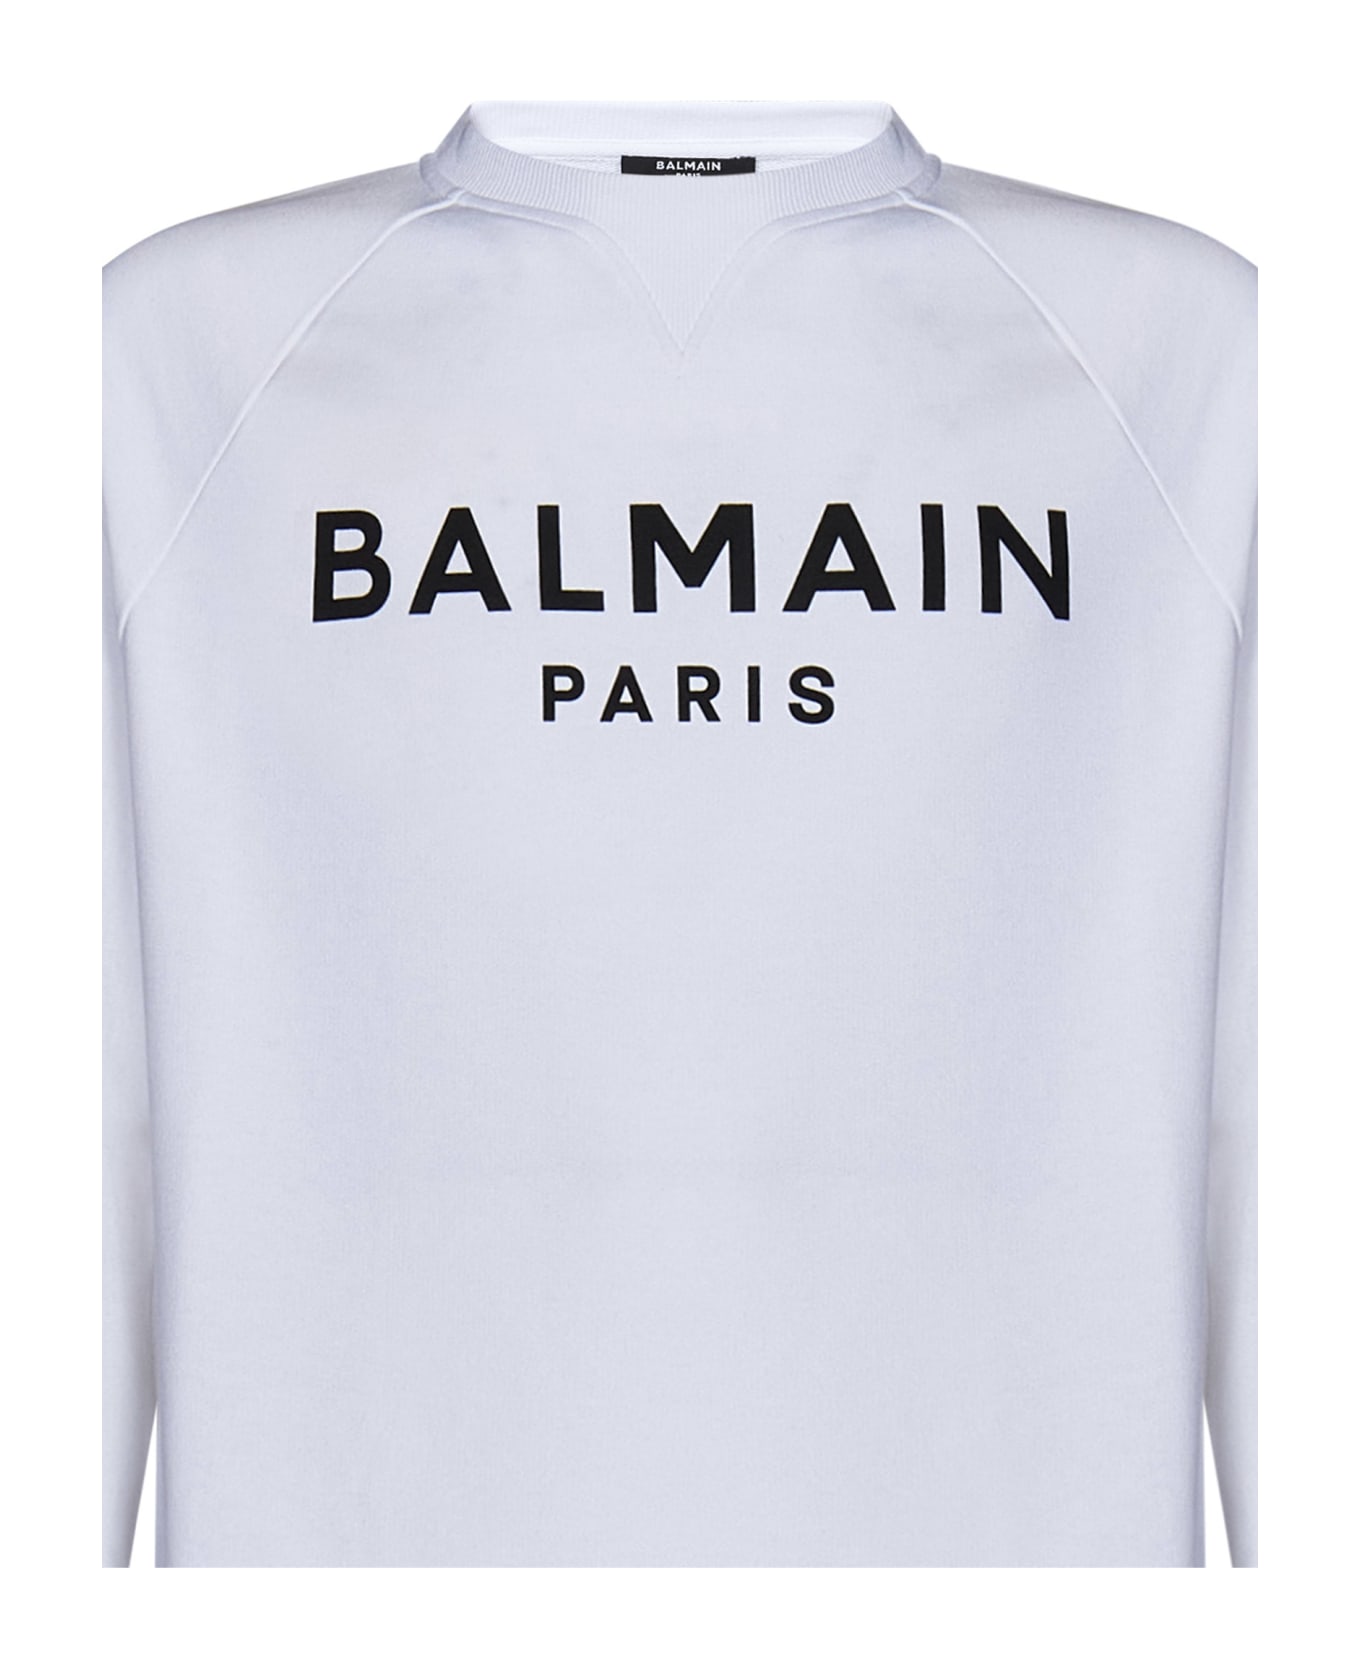 Balmain Sweatshirt - White